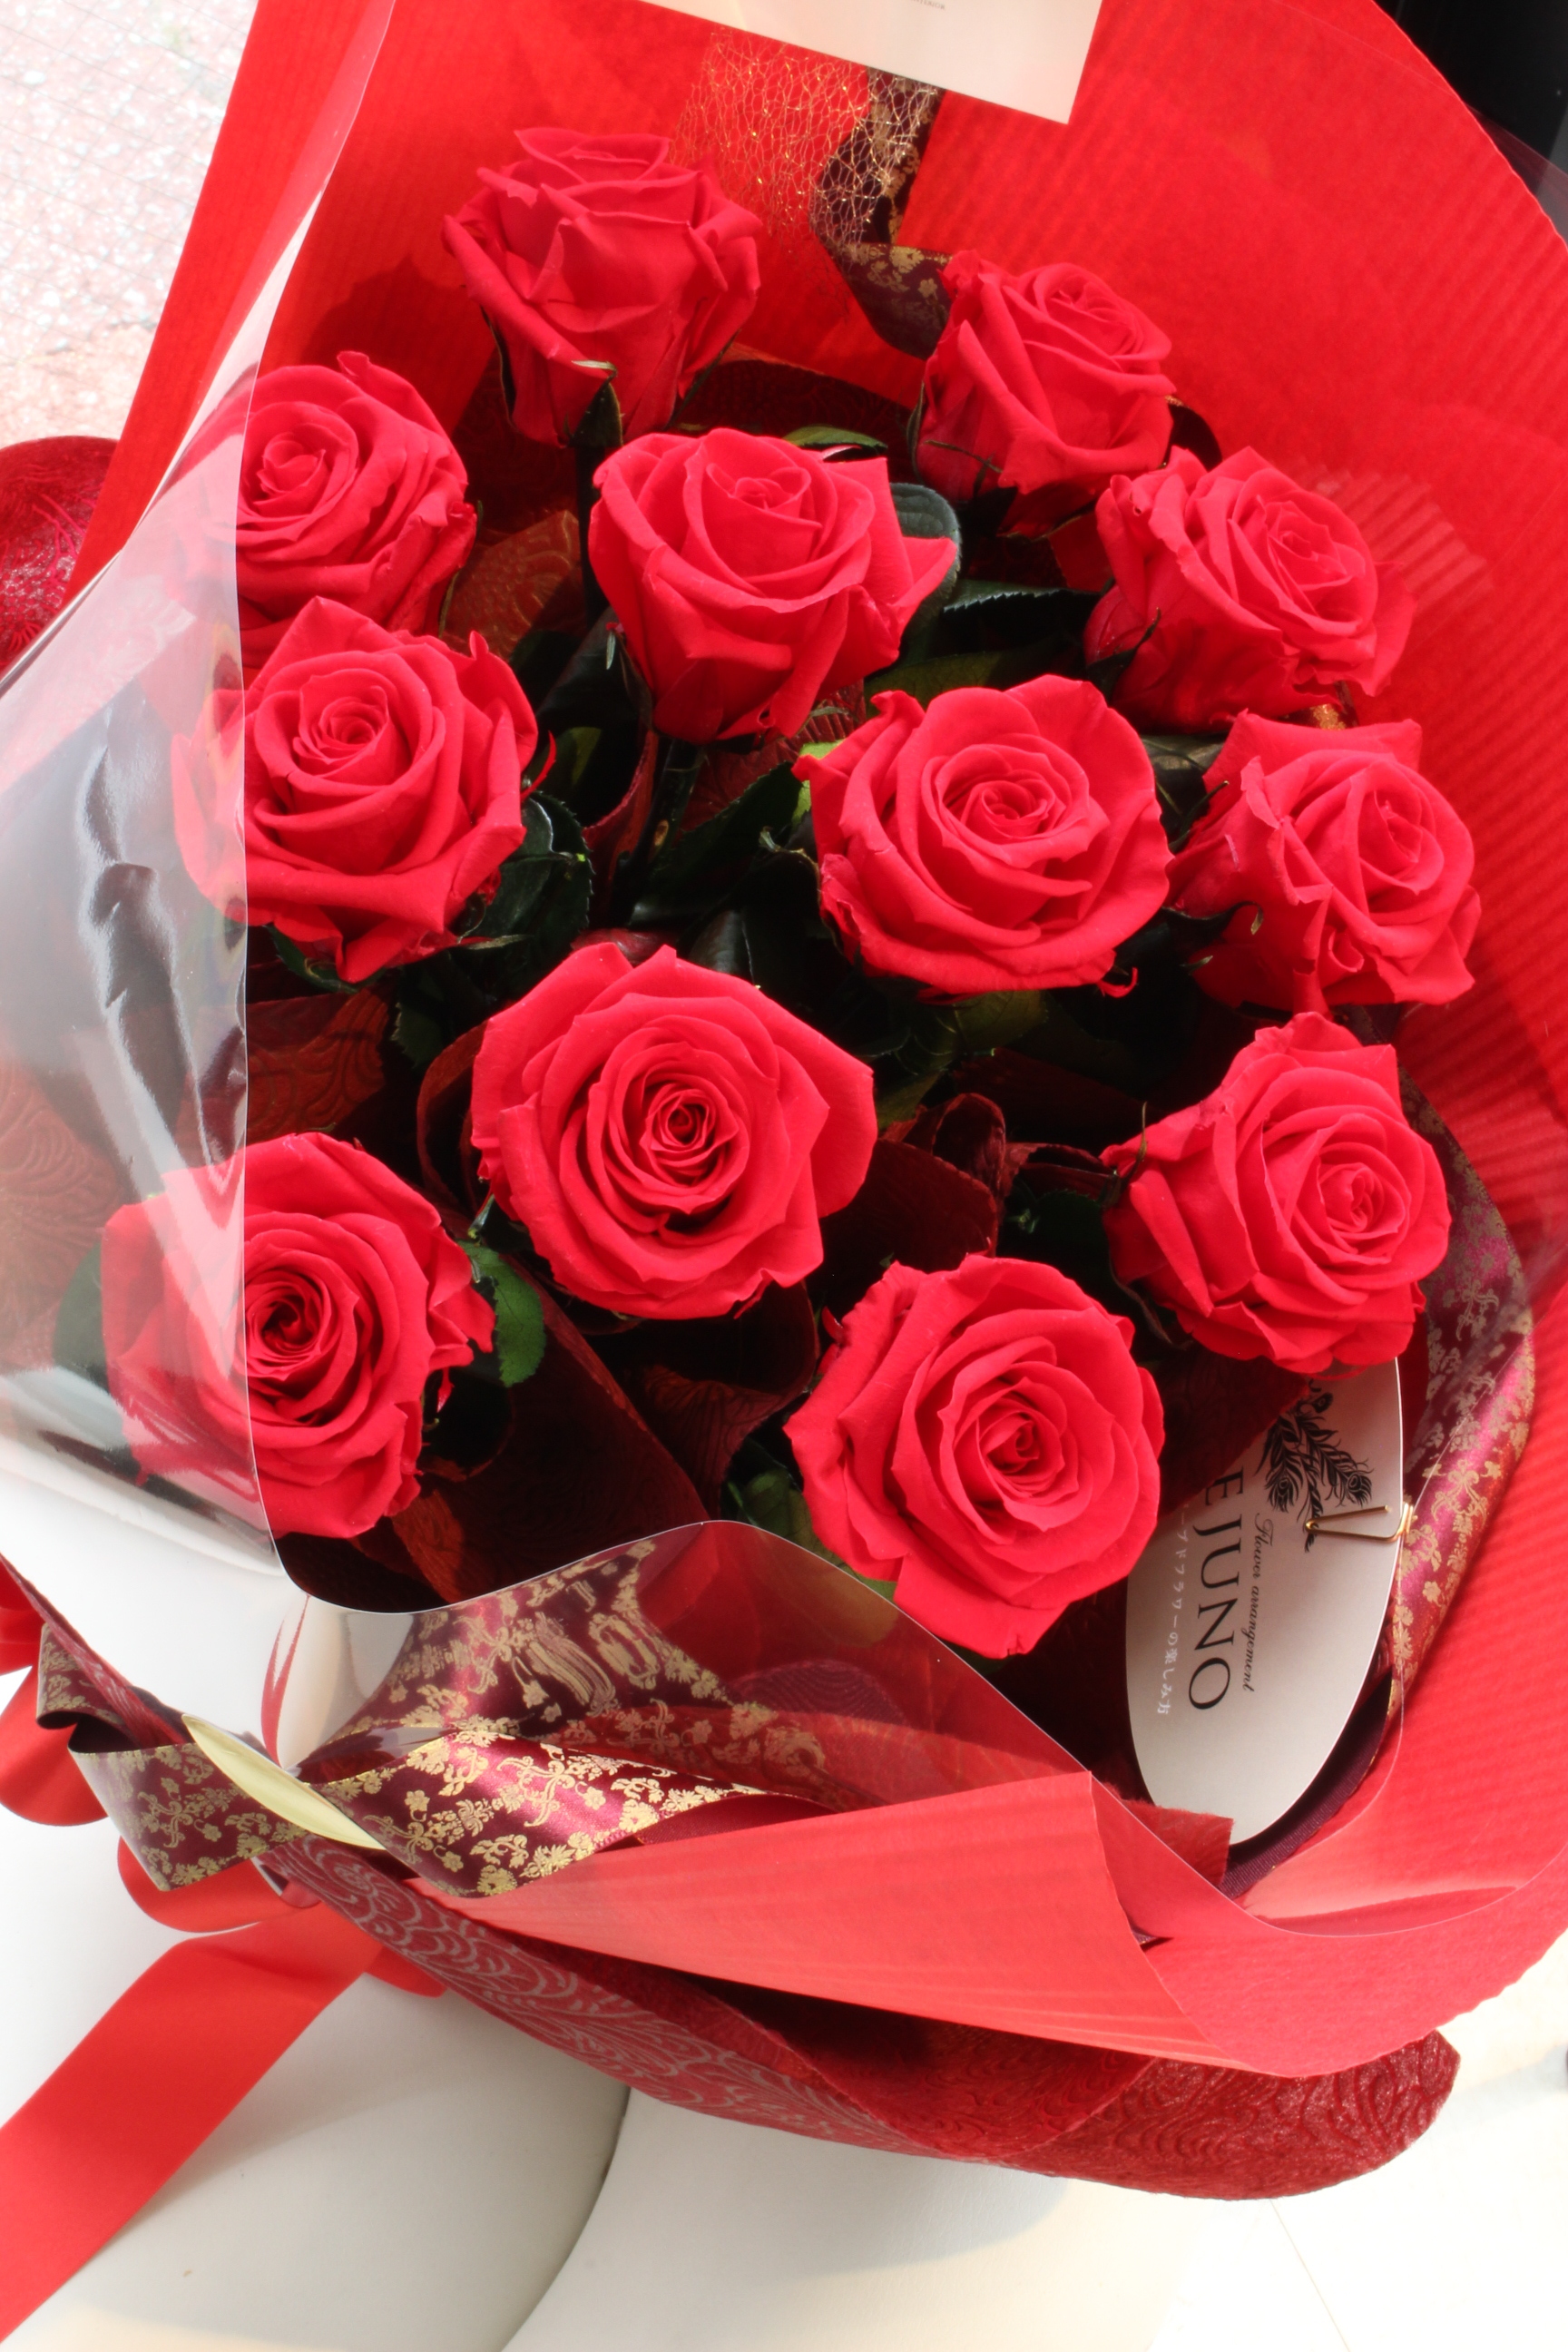 12輪の赤い薔薇の花束 ダズンローズ 茎付き 福岡のプリザーブドフラワー専門店 Rosejunoローズユノwebshop ネットショッピング